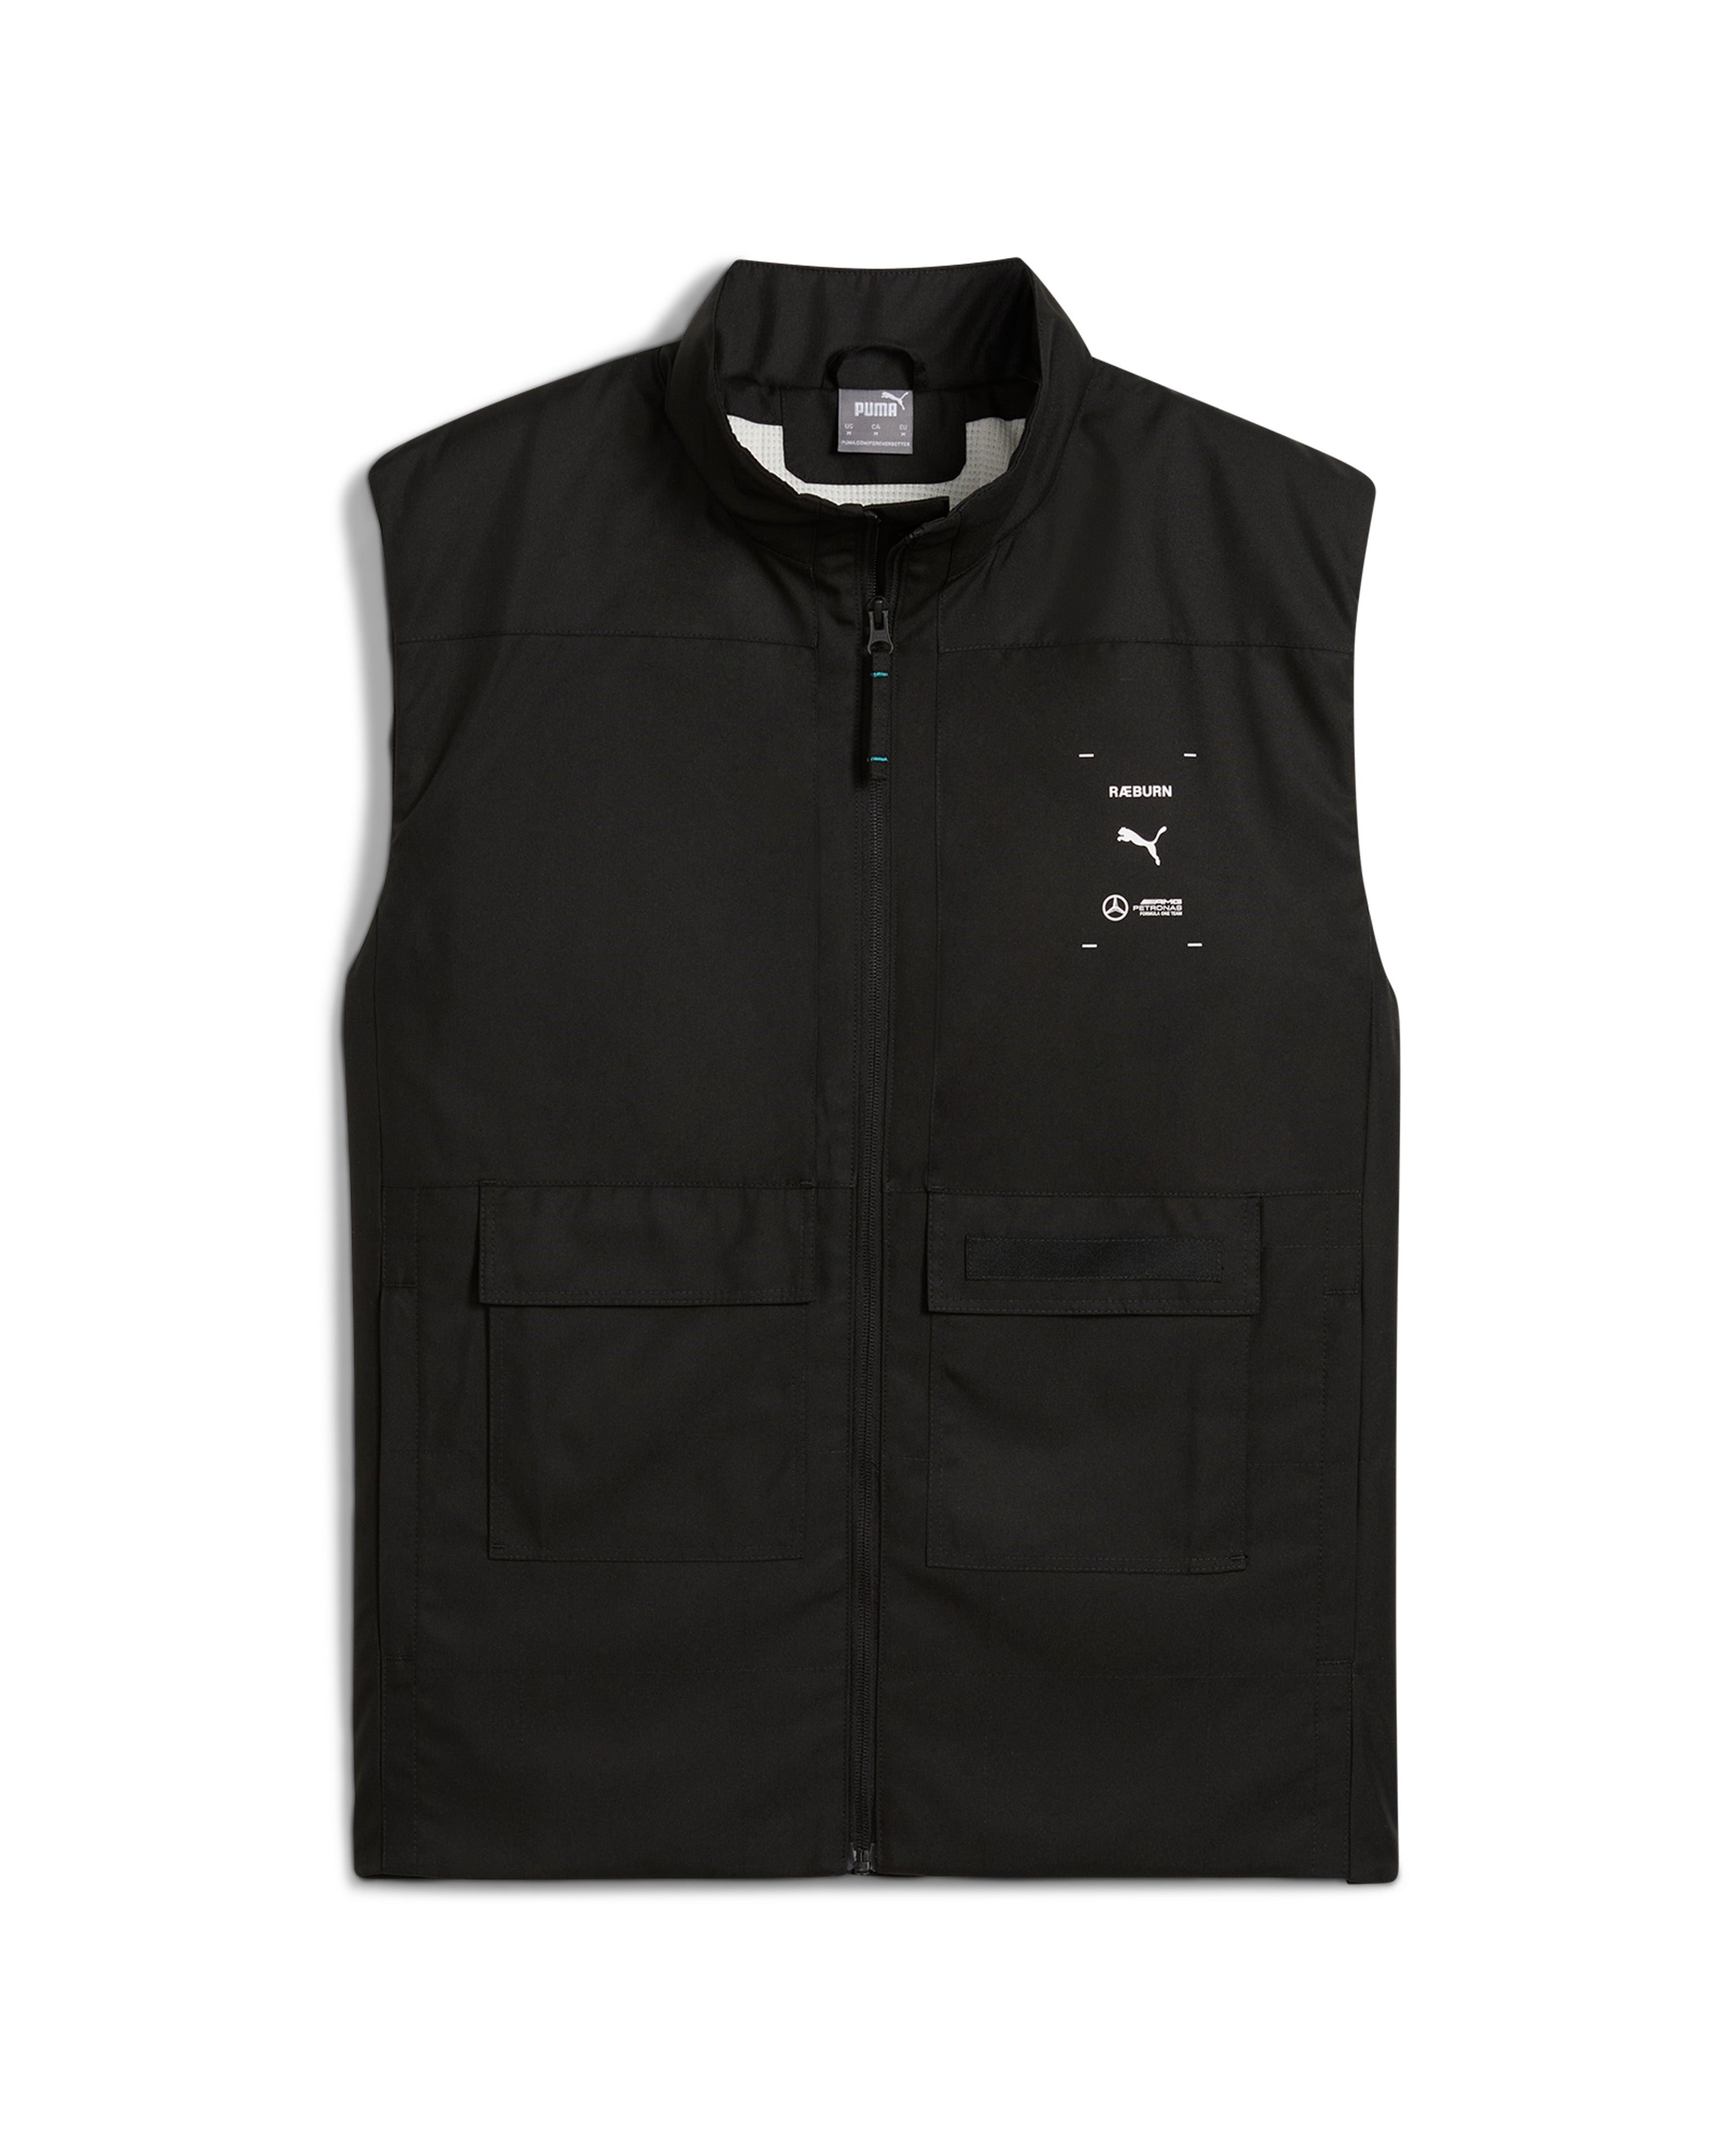 Raeburn x Mercedes-AMG F1 x Puma Vest Black